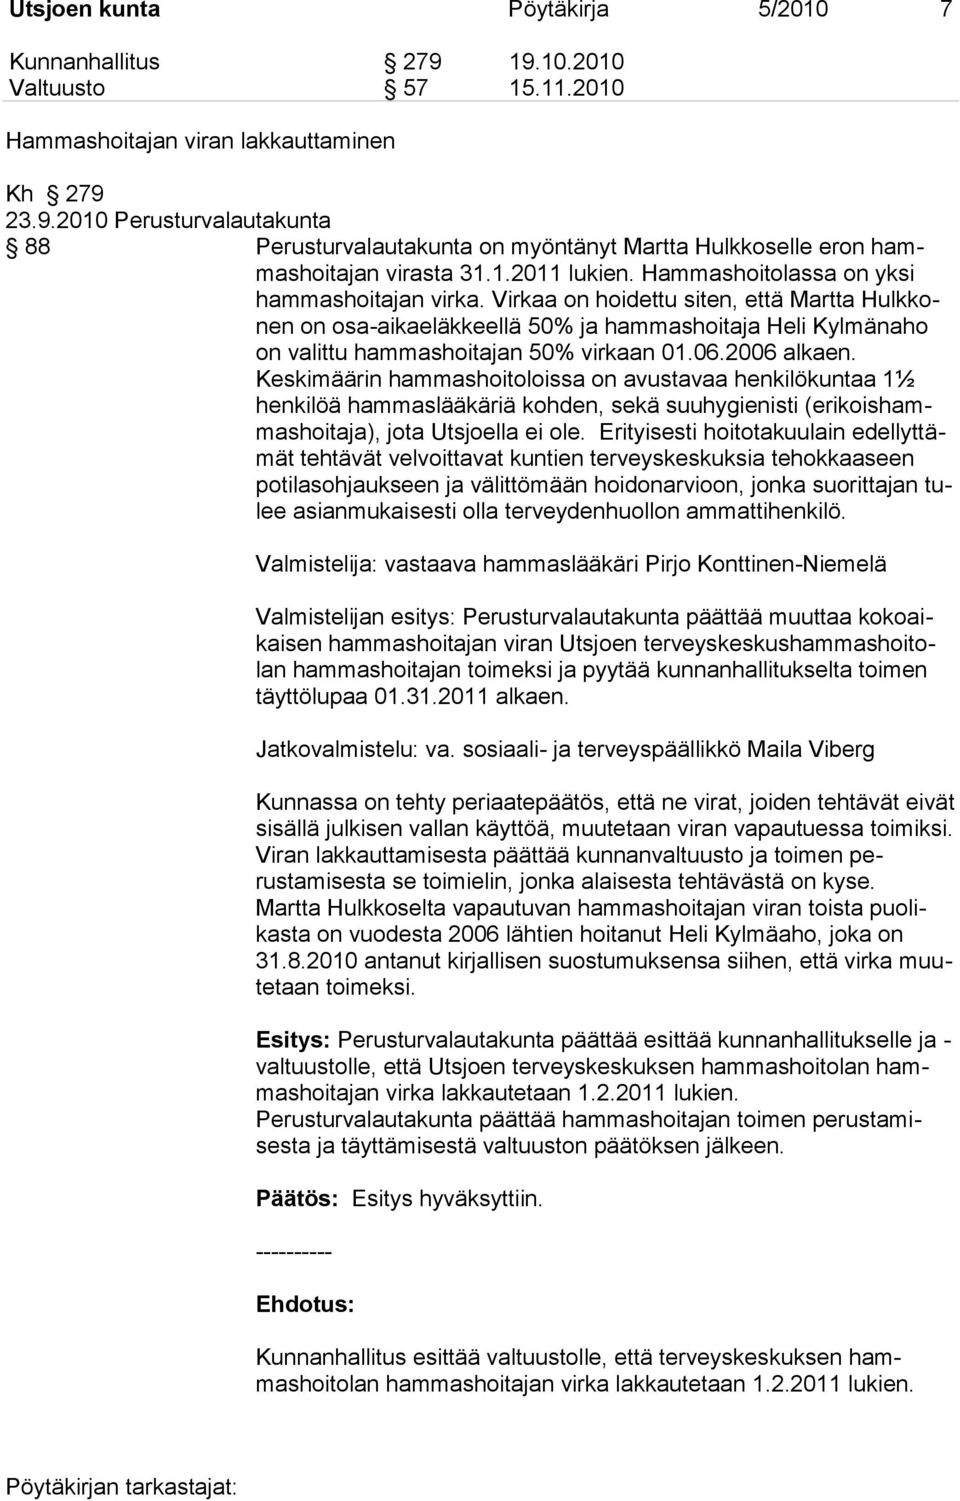 Virkaa on hoidettu siten, että Martta Hulkkonen on osa-aikaeläkkeellä 50% ja hammashoitaja Heli Kylmänaho on valittu hammashoitajan 50% virkaan 01.06.2006 alkaen.